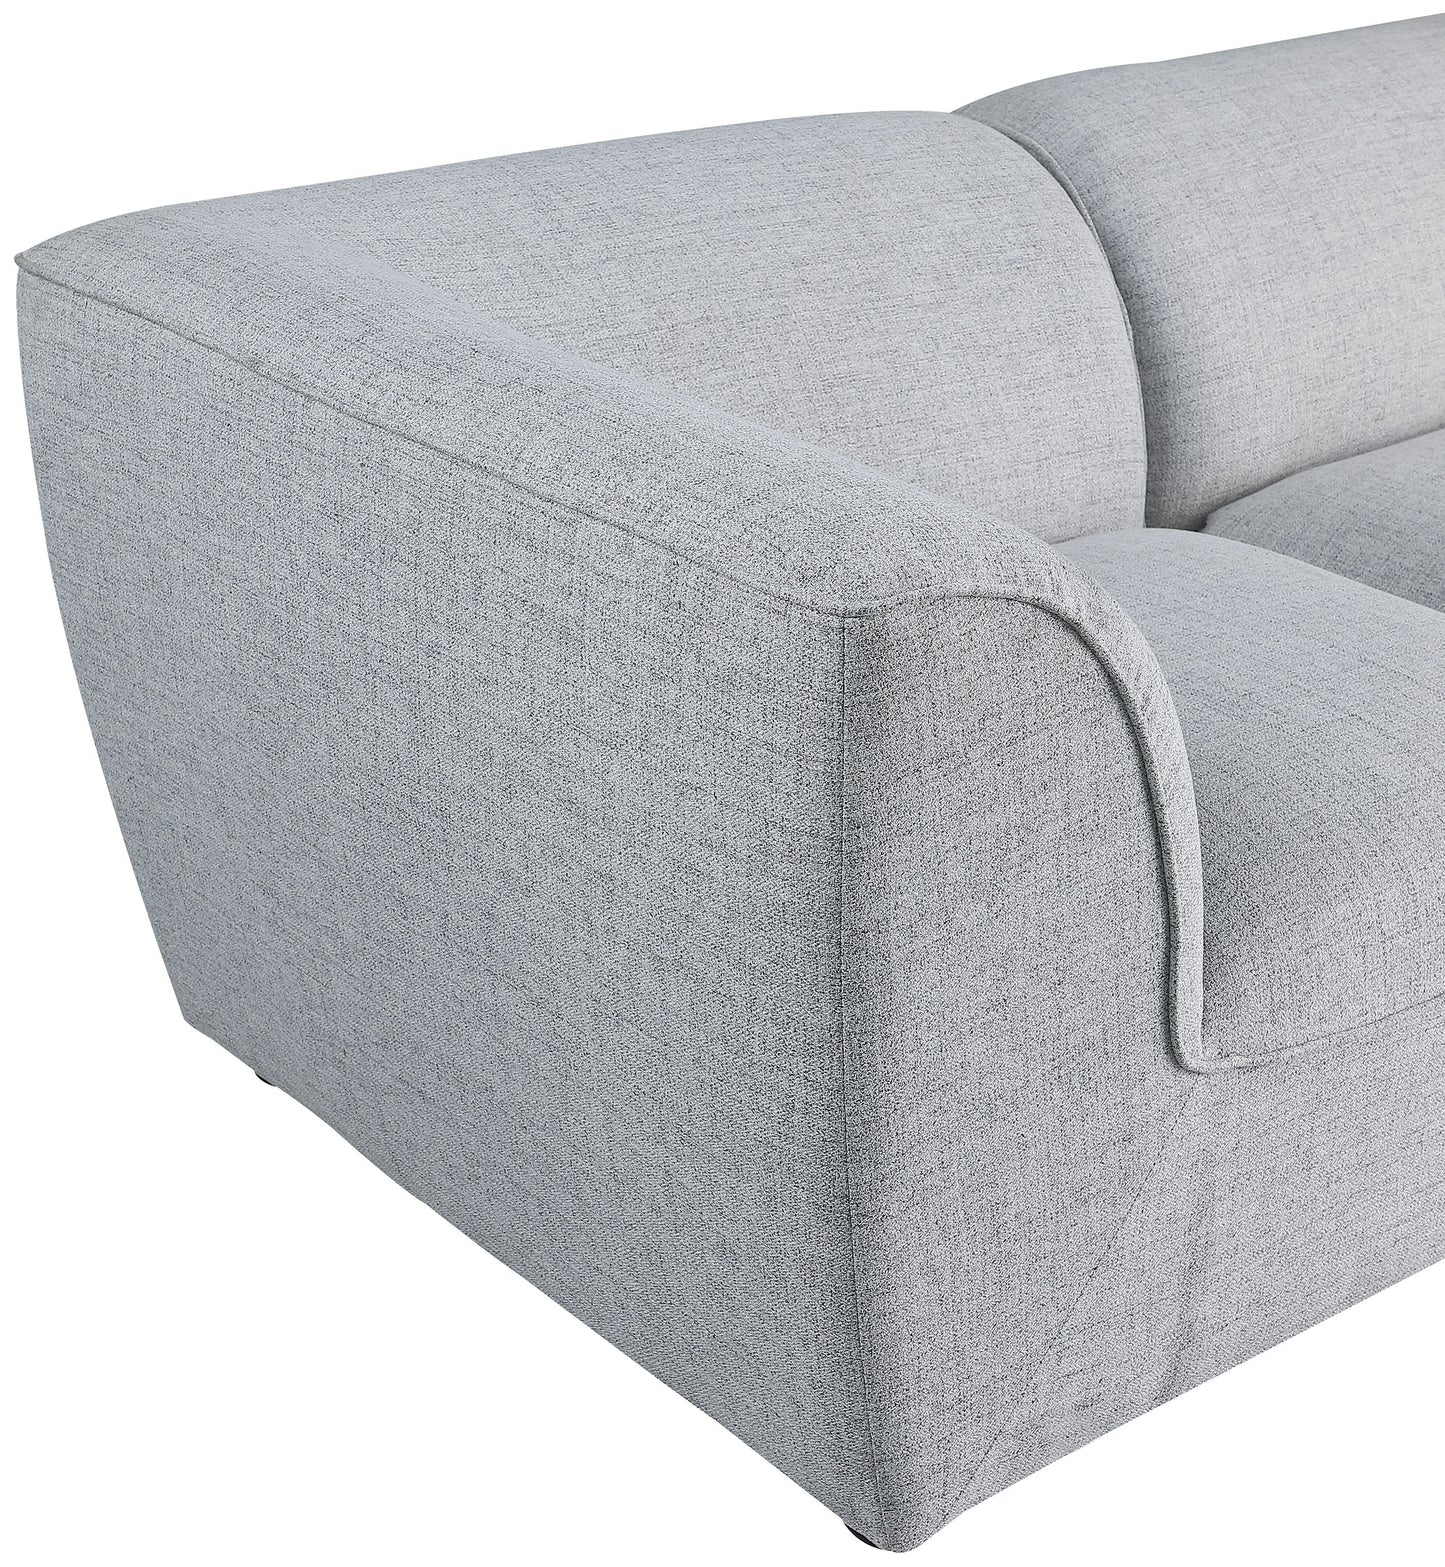 tavolo grey durable linen textured modular sectional sec4a